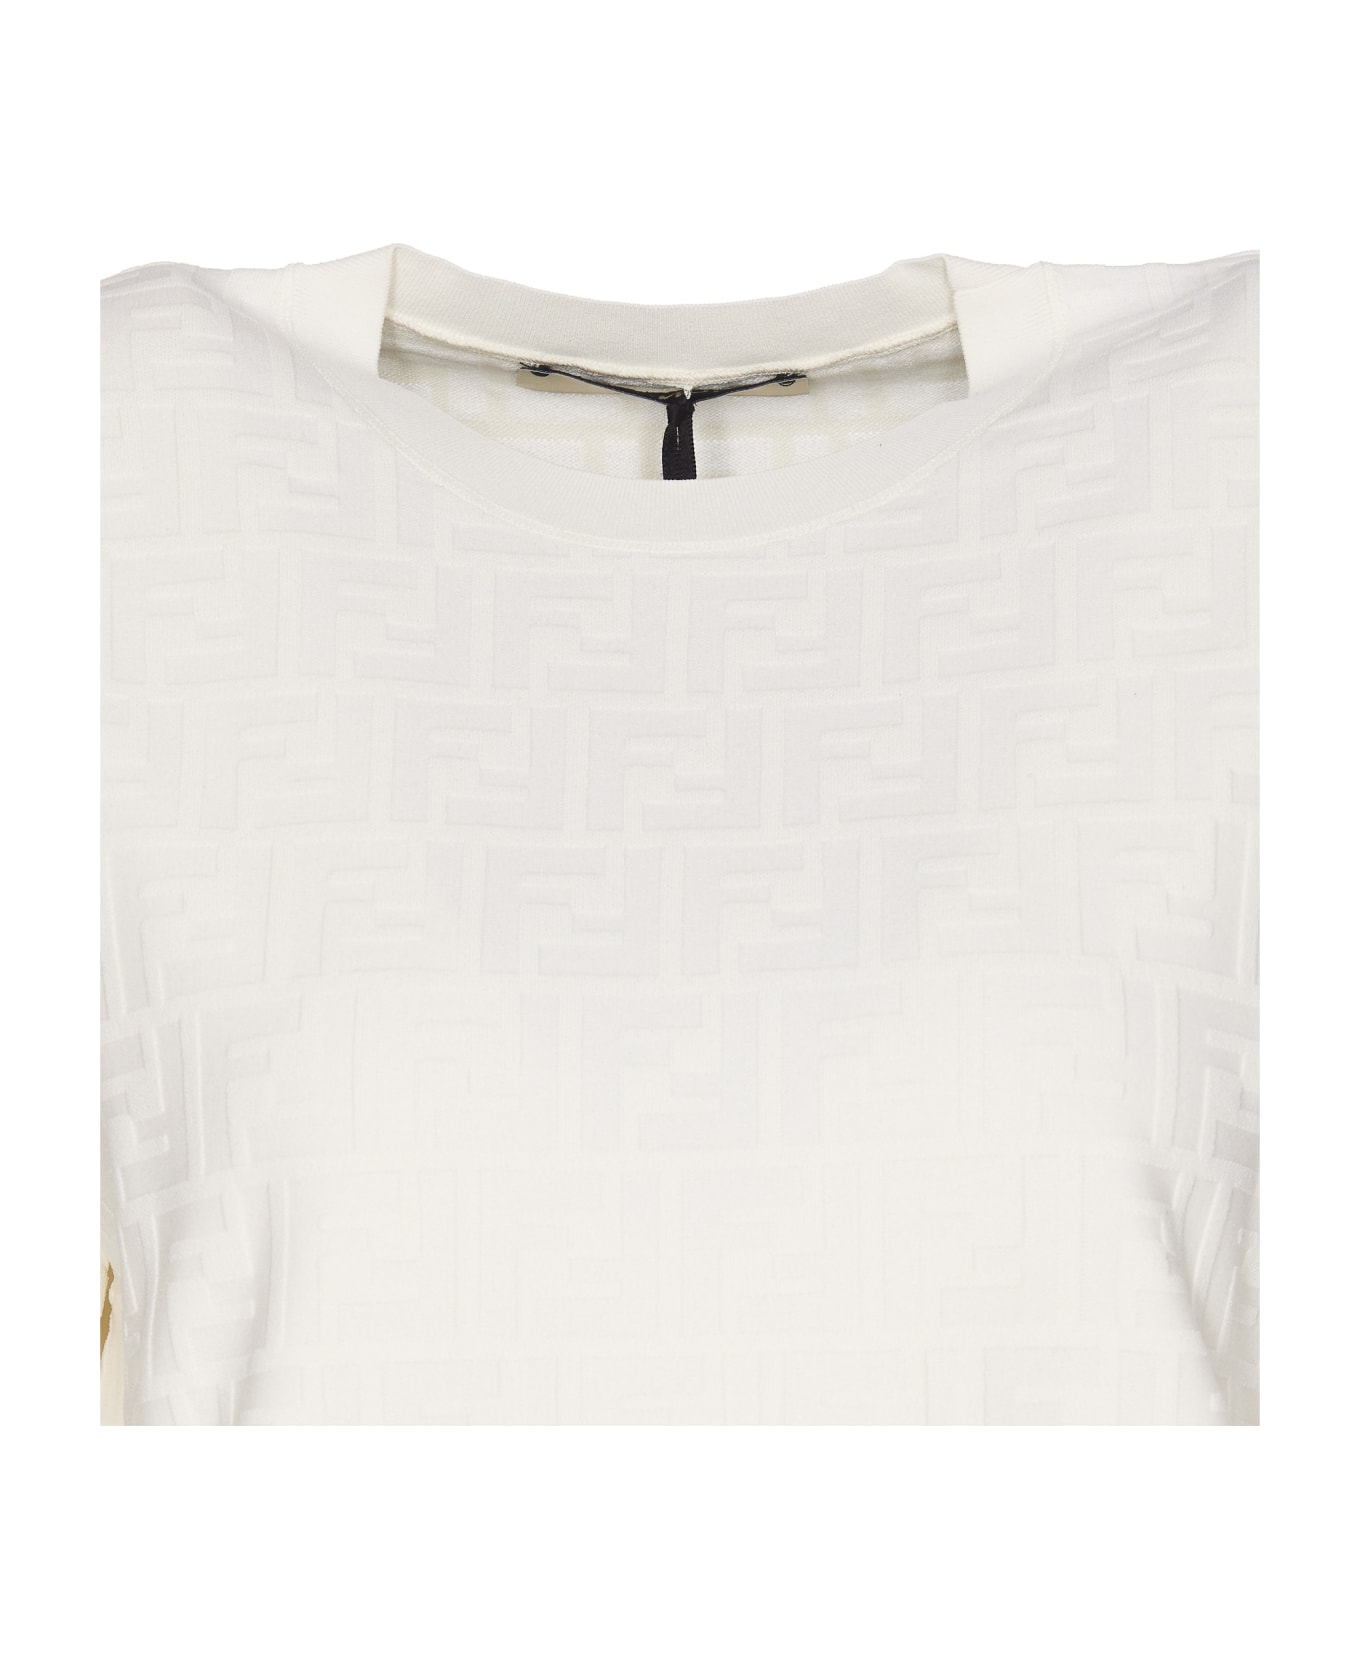 Fendi T-shirt - WHITE Tシャツ